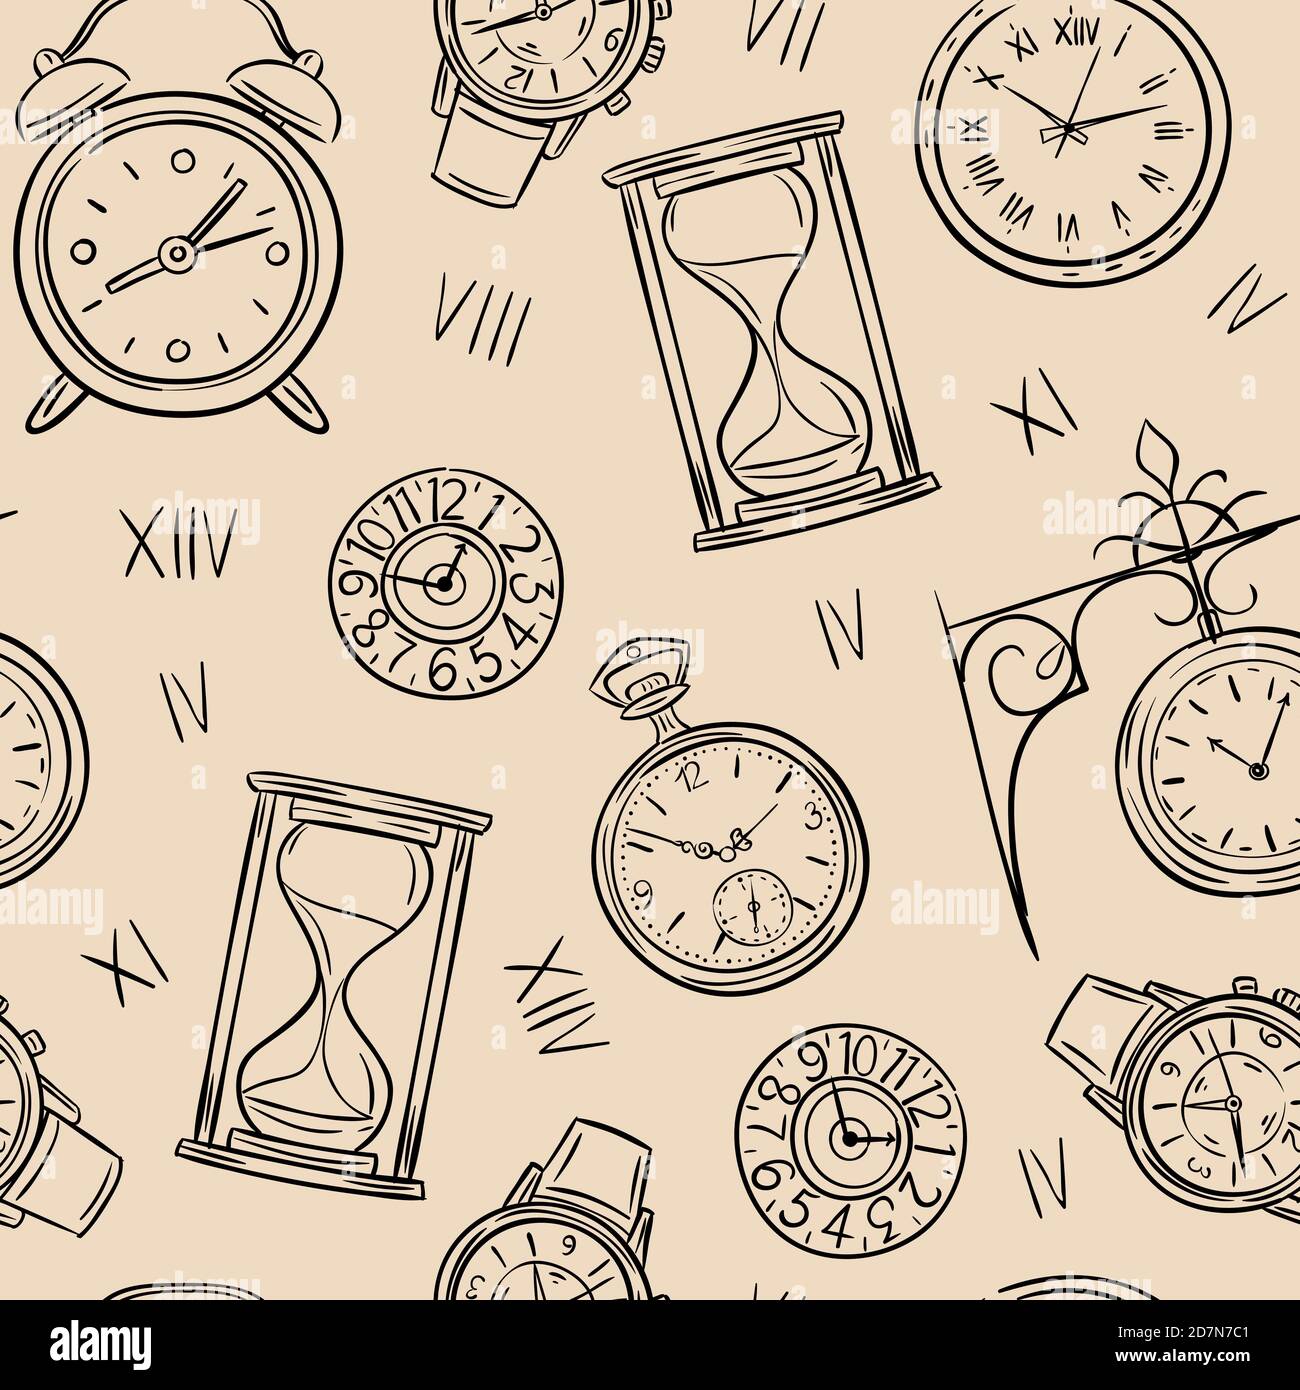 Uhr nahtlos Muster. Sketch Zeit, Skizze Sanduhr und mechanische Uhr, Zeitmesser Vektor Vintage Textur. Darstellung von Uhr und Zeitmuster, mechanischer Zeitmesser Stock Vektor